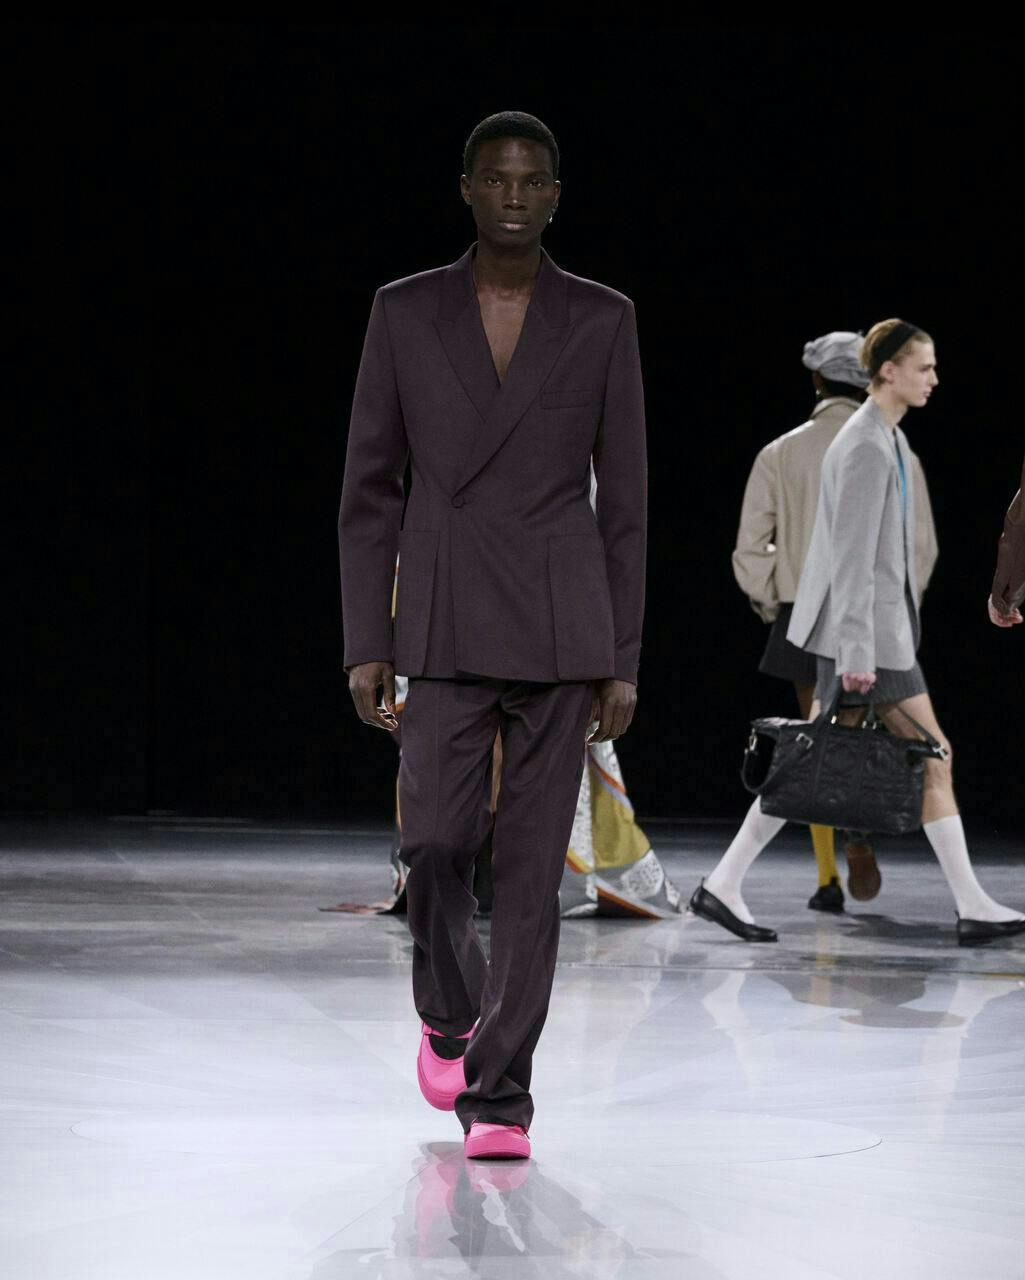 fashion adult male man person clothing coat shoe handbag suit